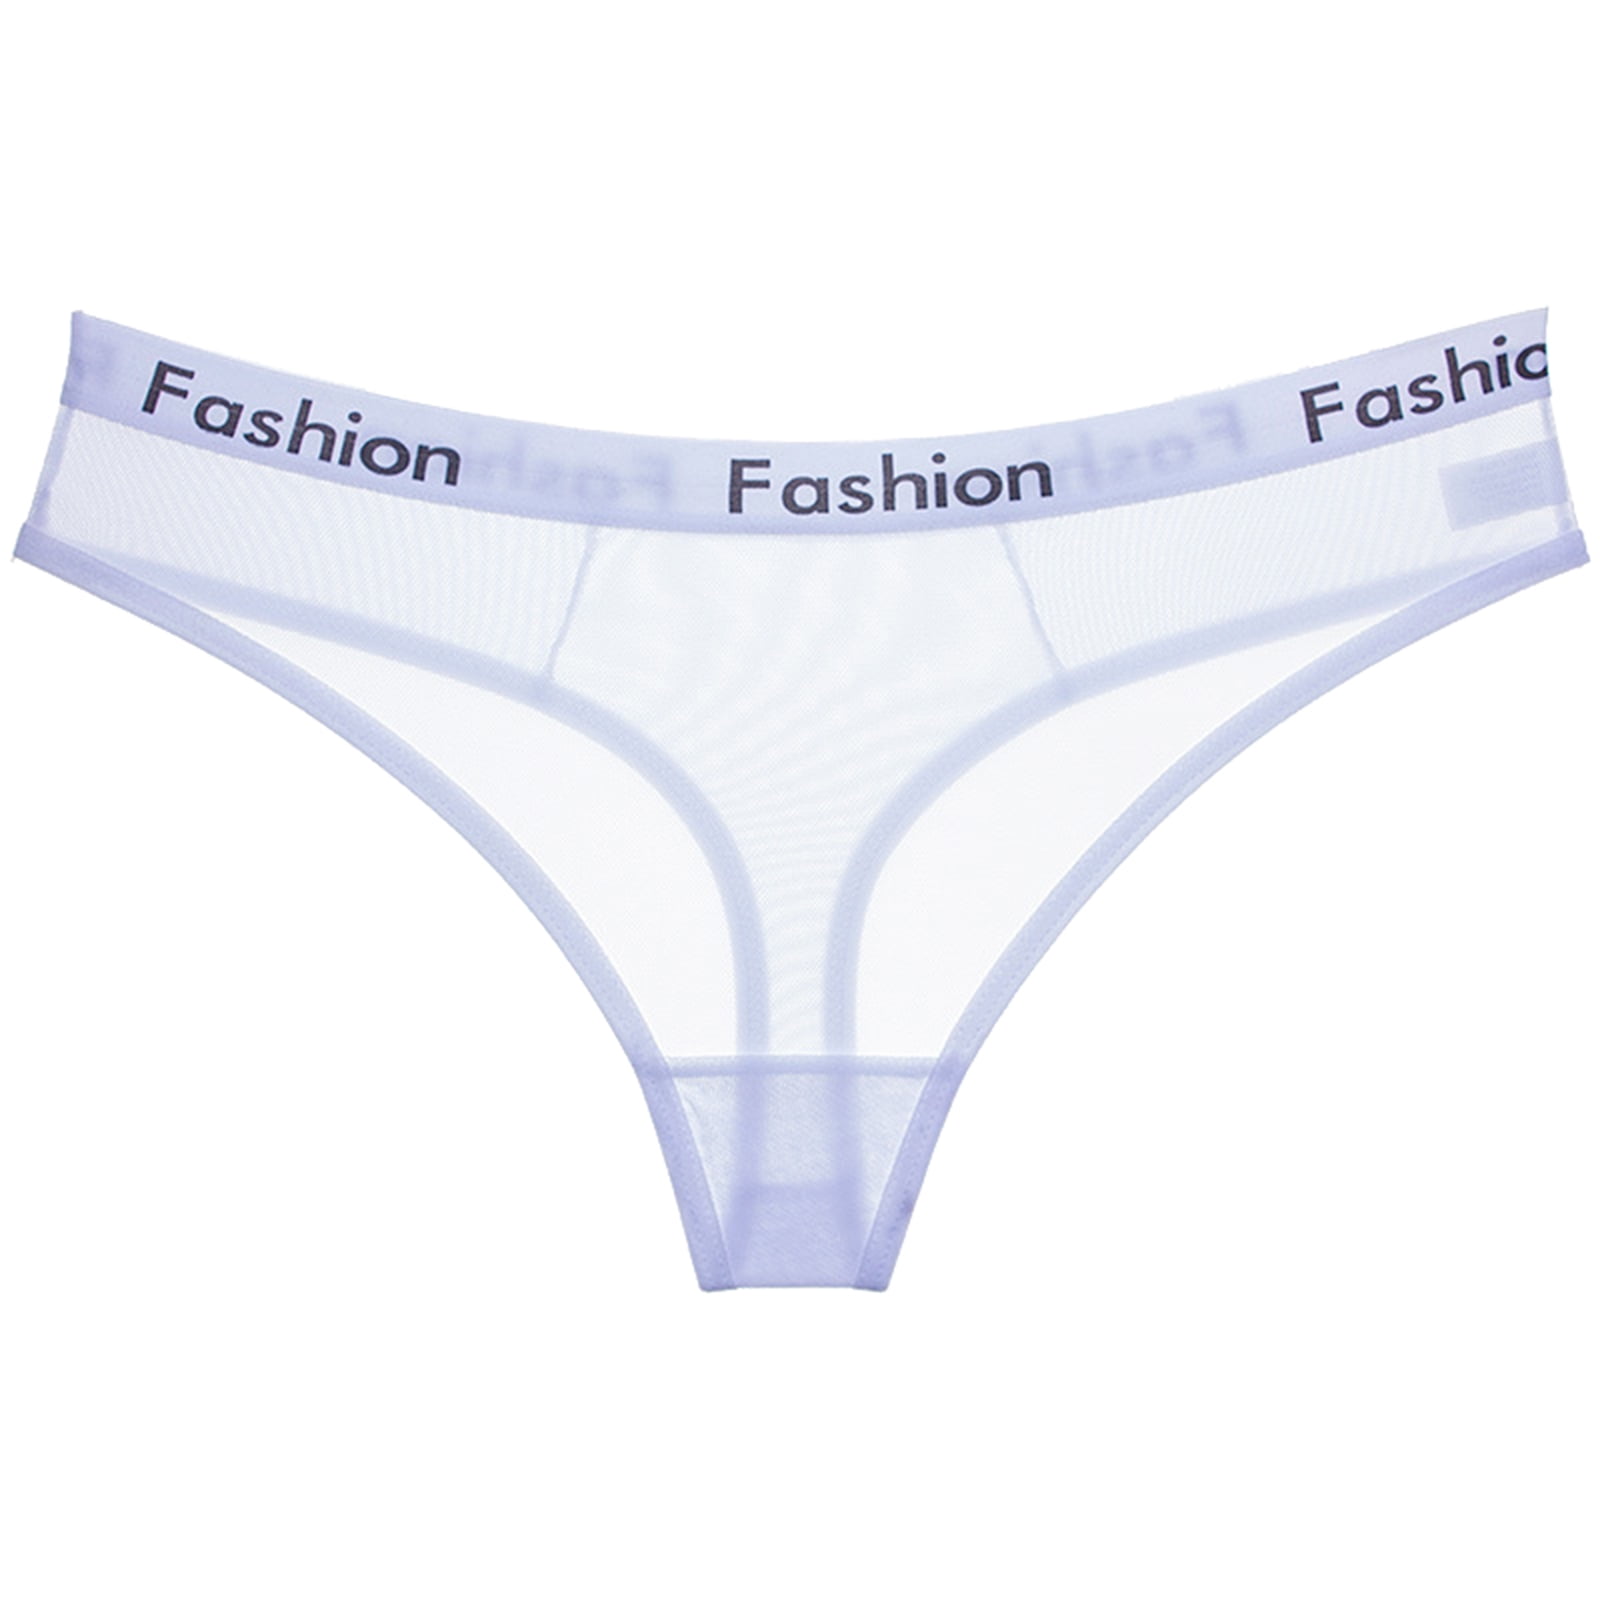 PMUYBHF Underwear Women High Waist Women'S Cotton Panties High Waist Full  Coverage Women'S Panties 5.99 